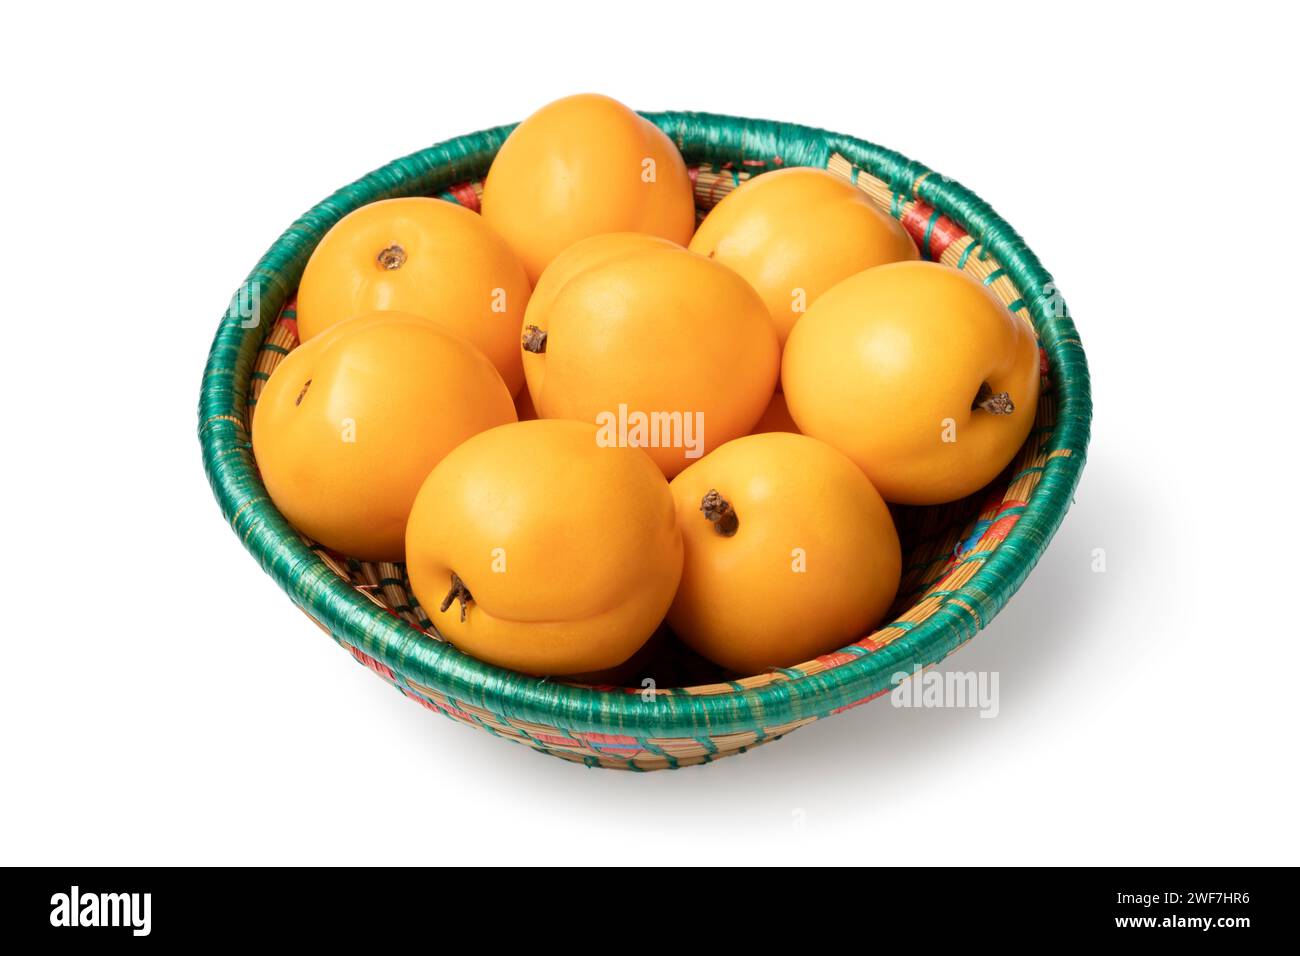 Frutta di nettarcot fresca matura e sana in un cestino da vicino isolato su fondo bianco Foto Stock